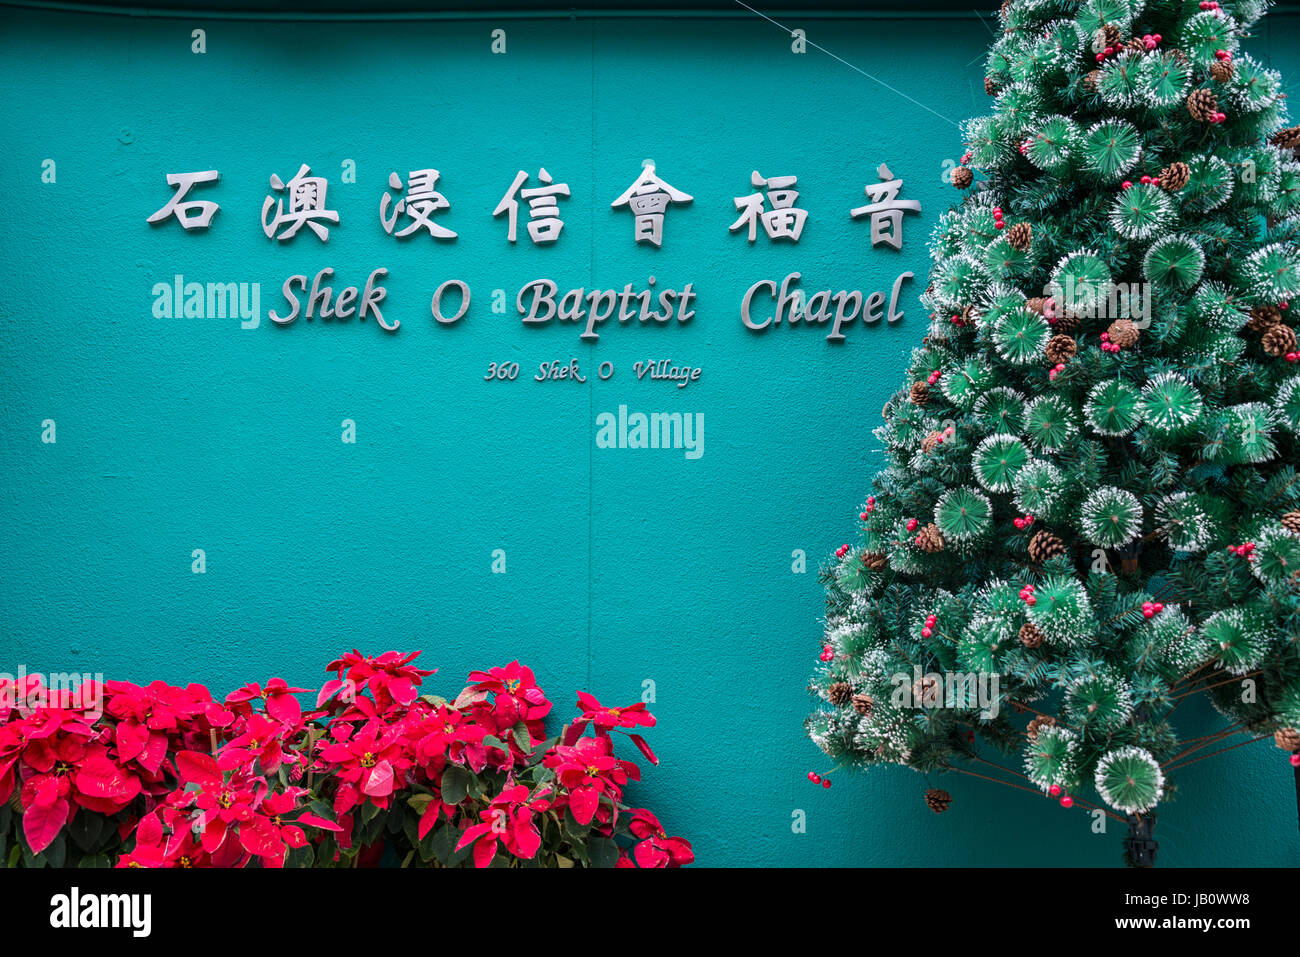 Baptist Chapel Sign and Christmas Decorations, Shek O Village, Hong Kong Stock Photo